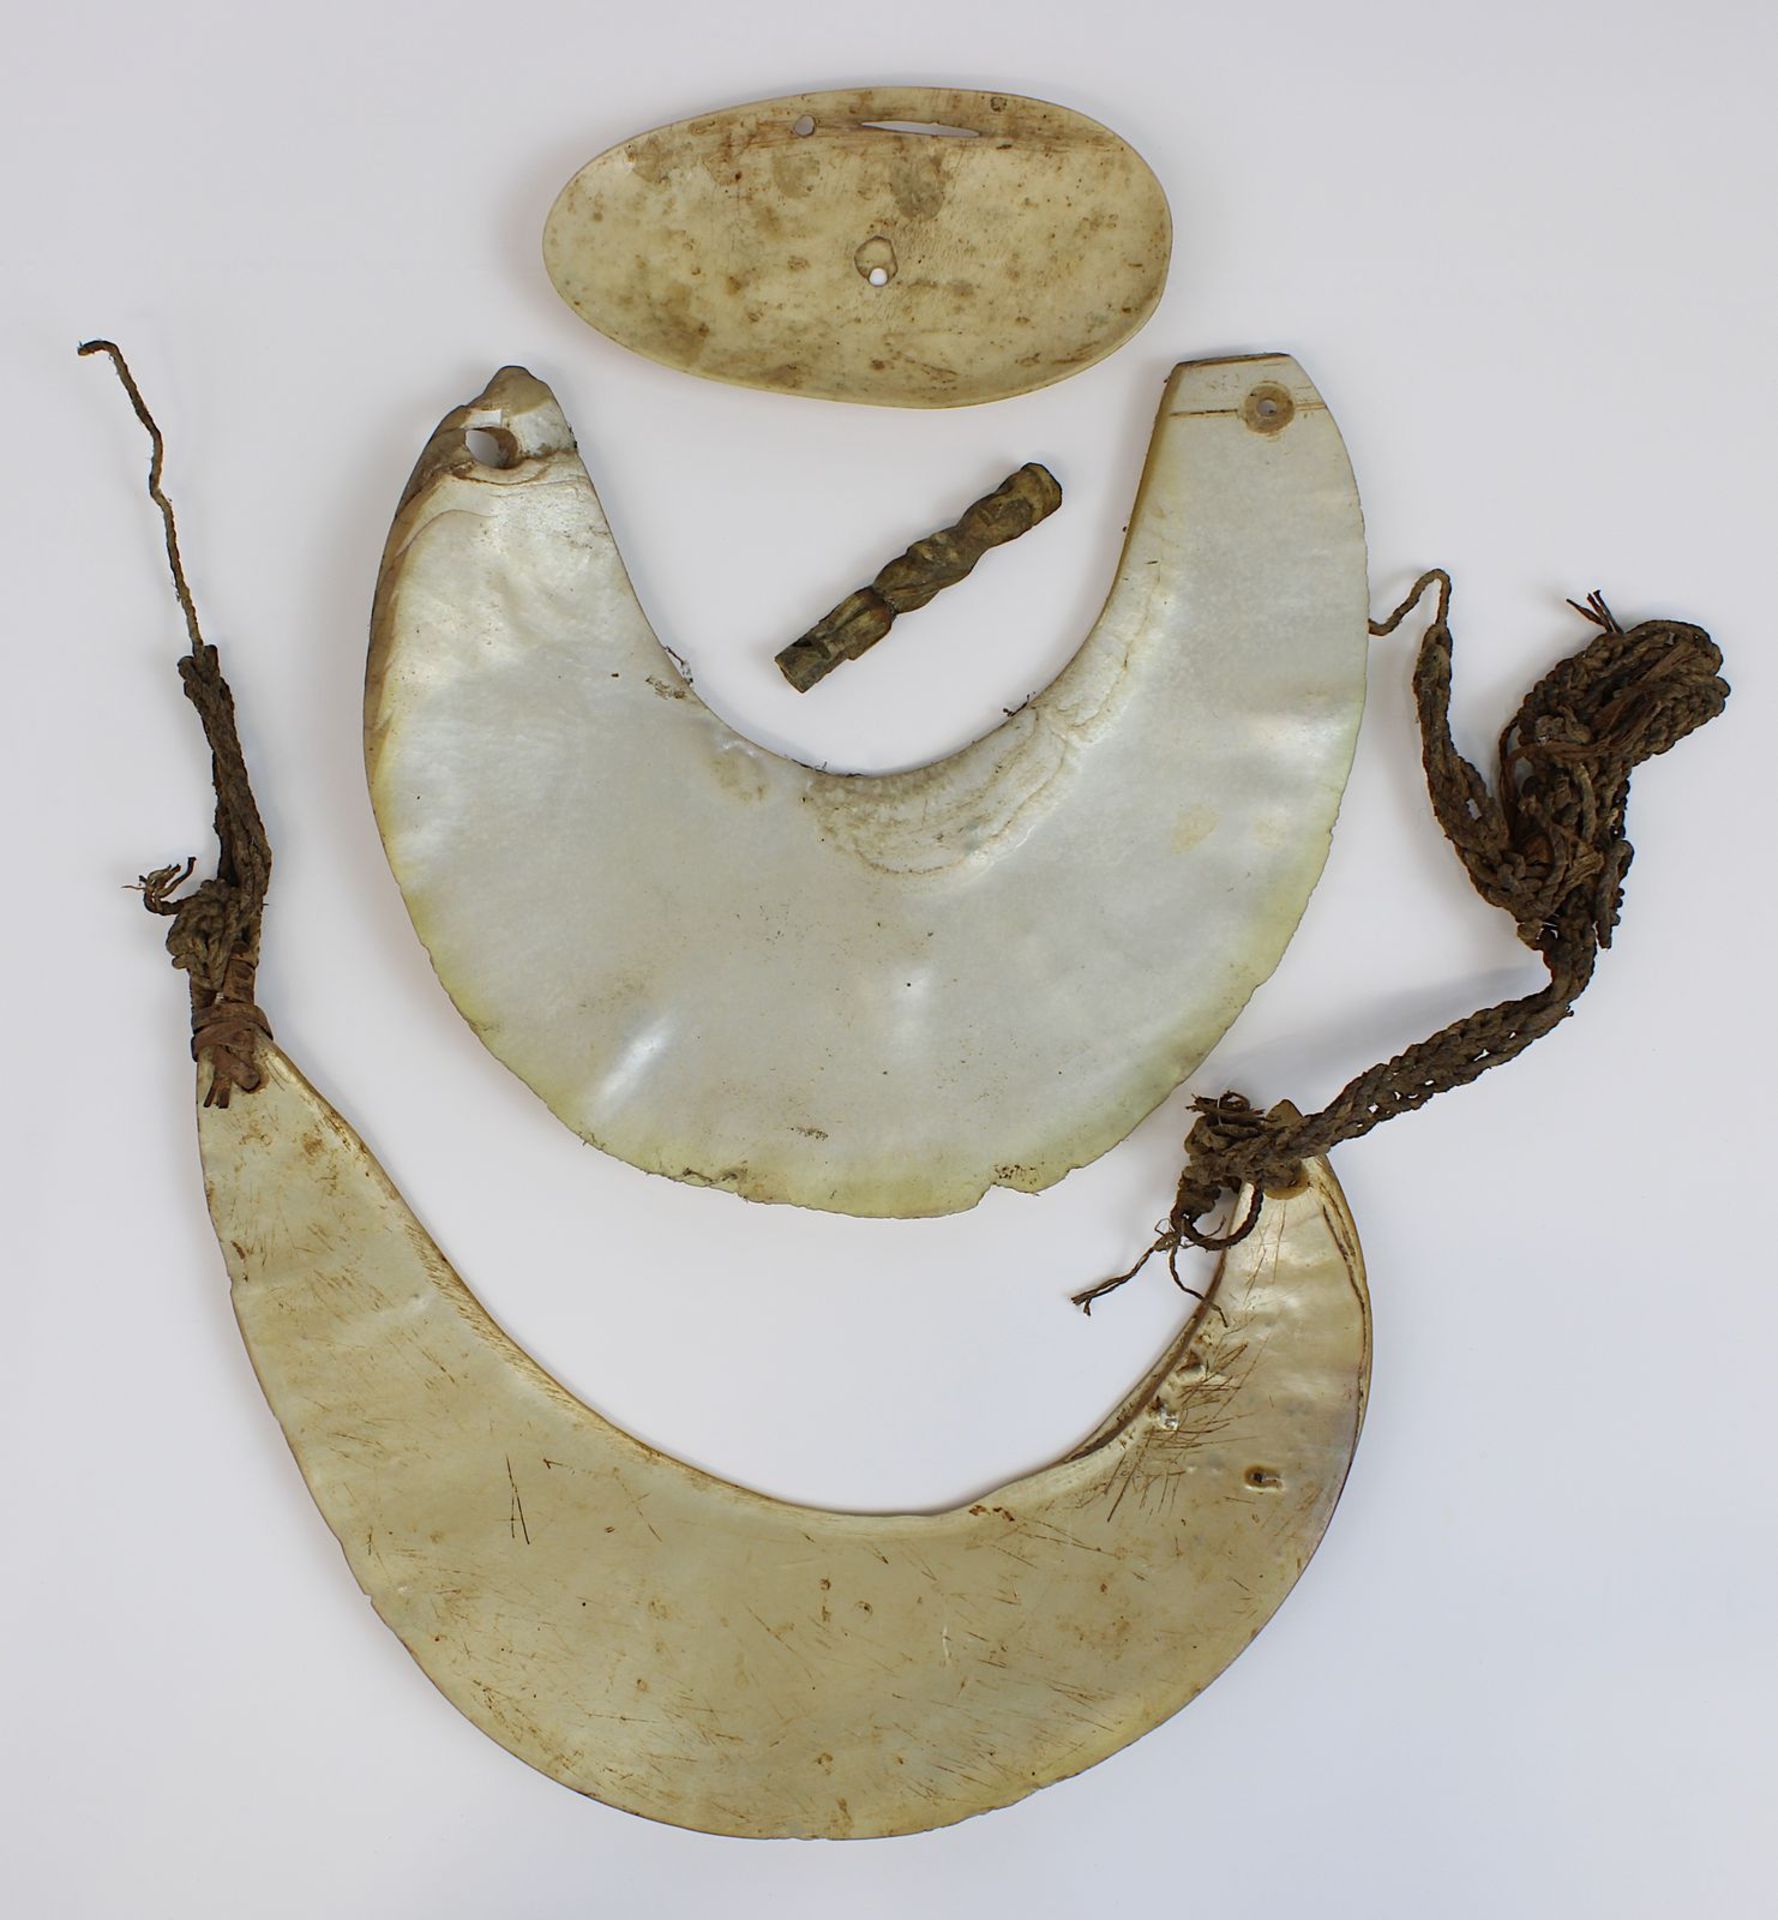 2 Kina-Wertmuscheln, Cymbium-Anhänger und Figürchen aus Knochen, Sepik, Papua-Neuguinea: Zwei